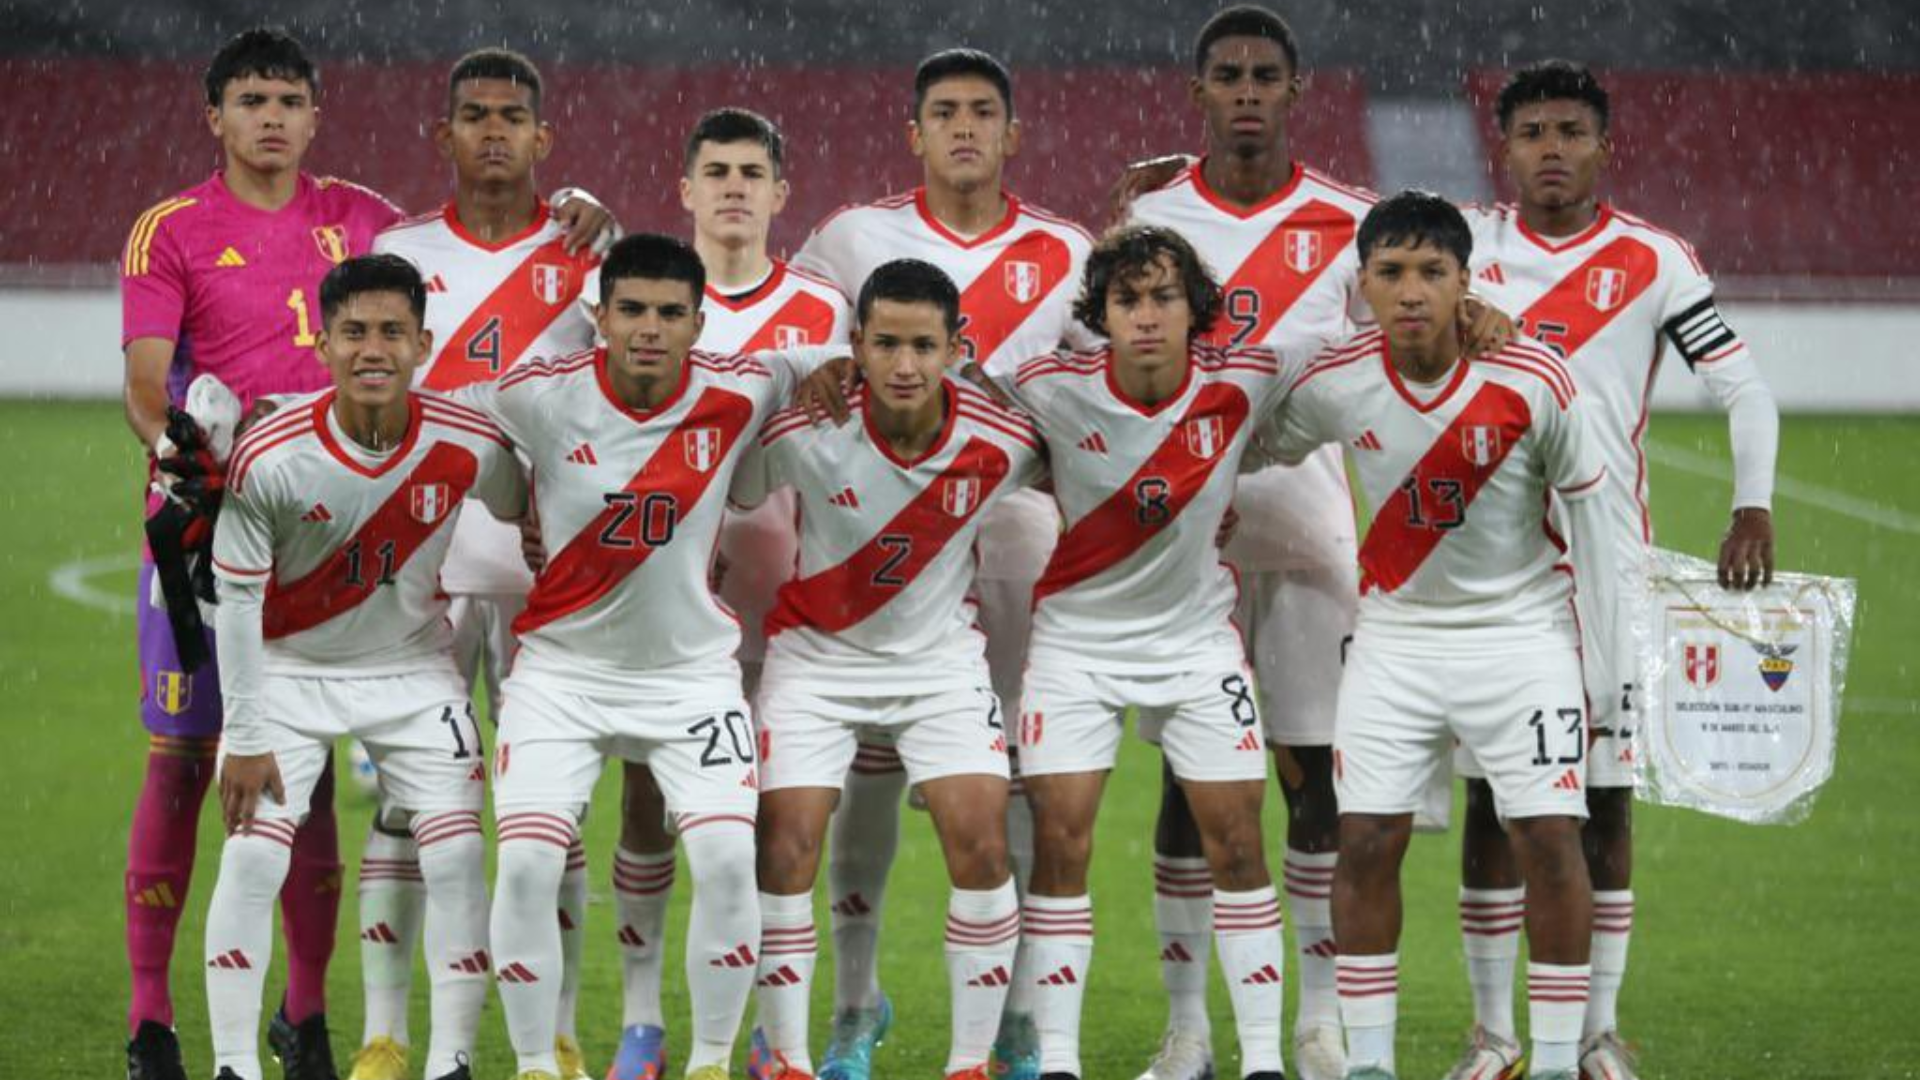 La selección peruana se prepara para ser local en el Mundial Sub 17 a disputarse en noviembre (FPF).